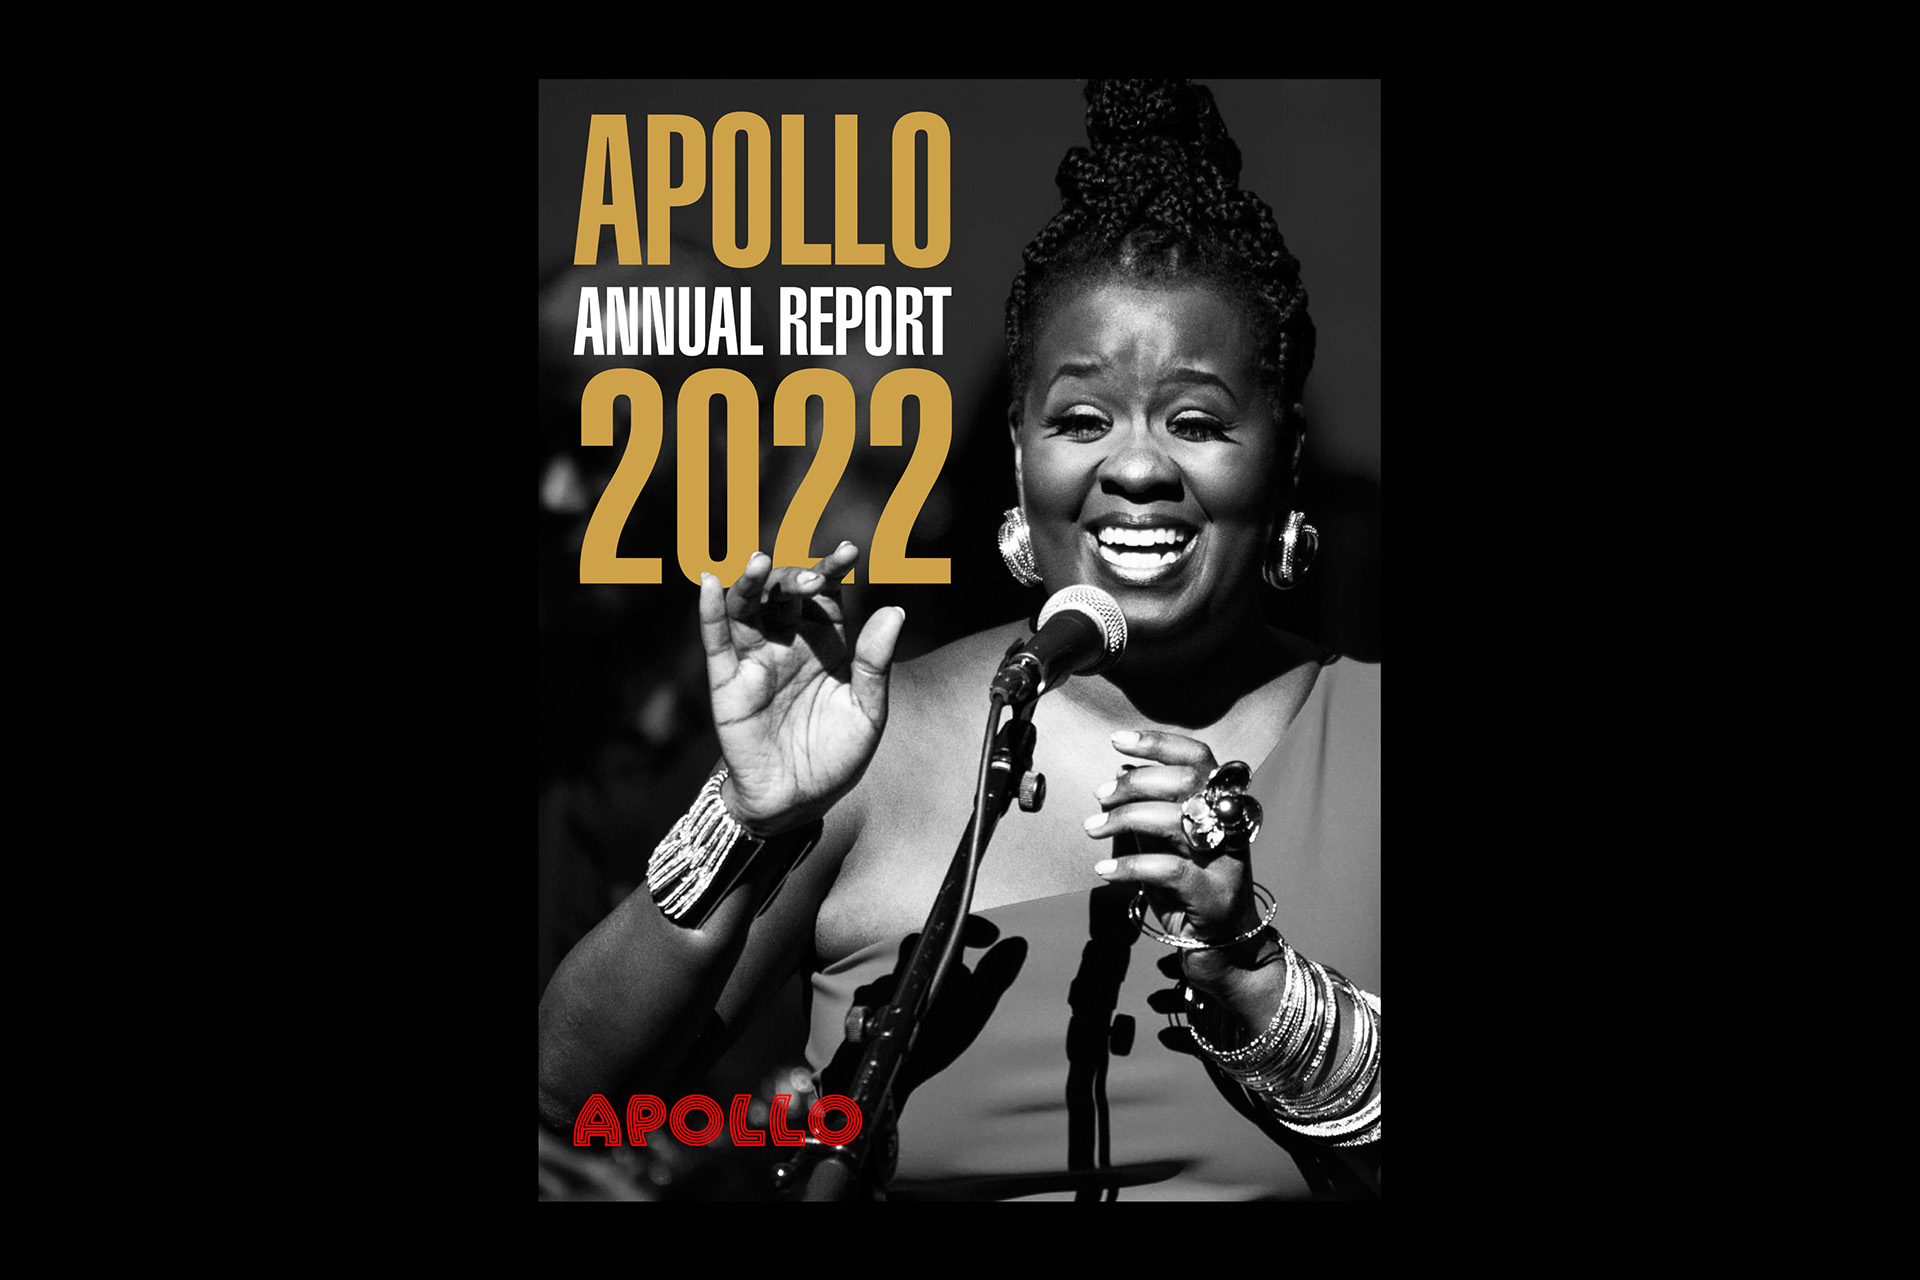 Apollo Annual Report